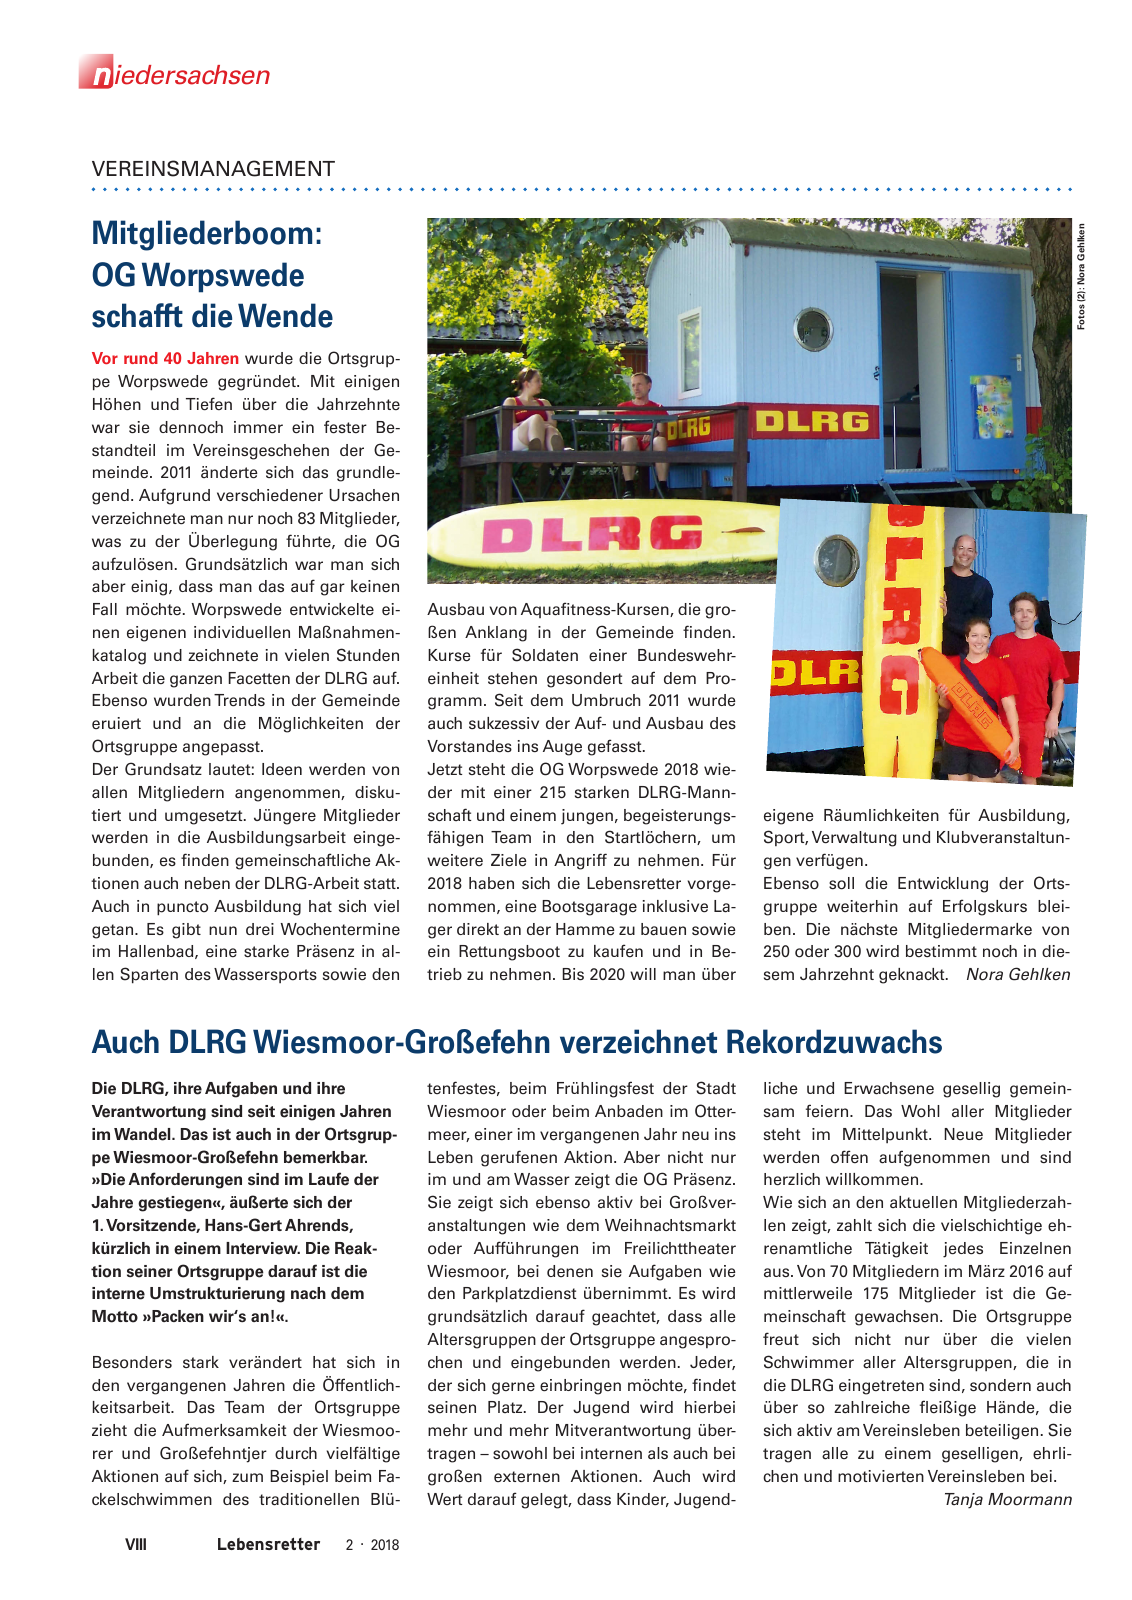 Vorschau Lebensretter 2/2018 - Regionalausgabe Niedersachsen Seite 10